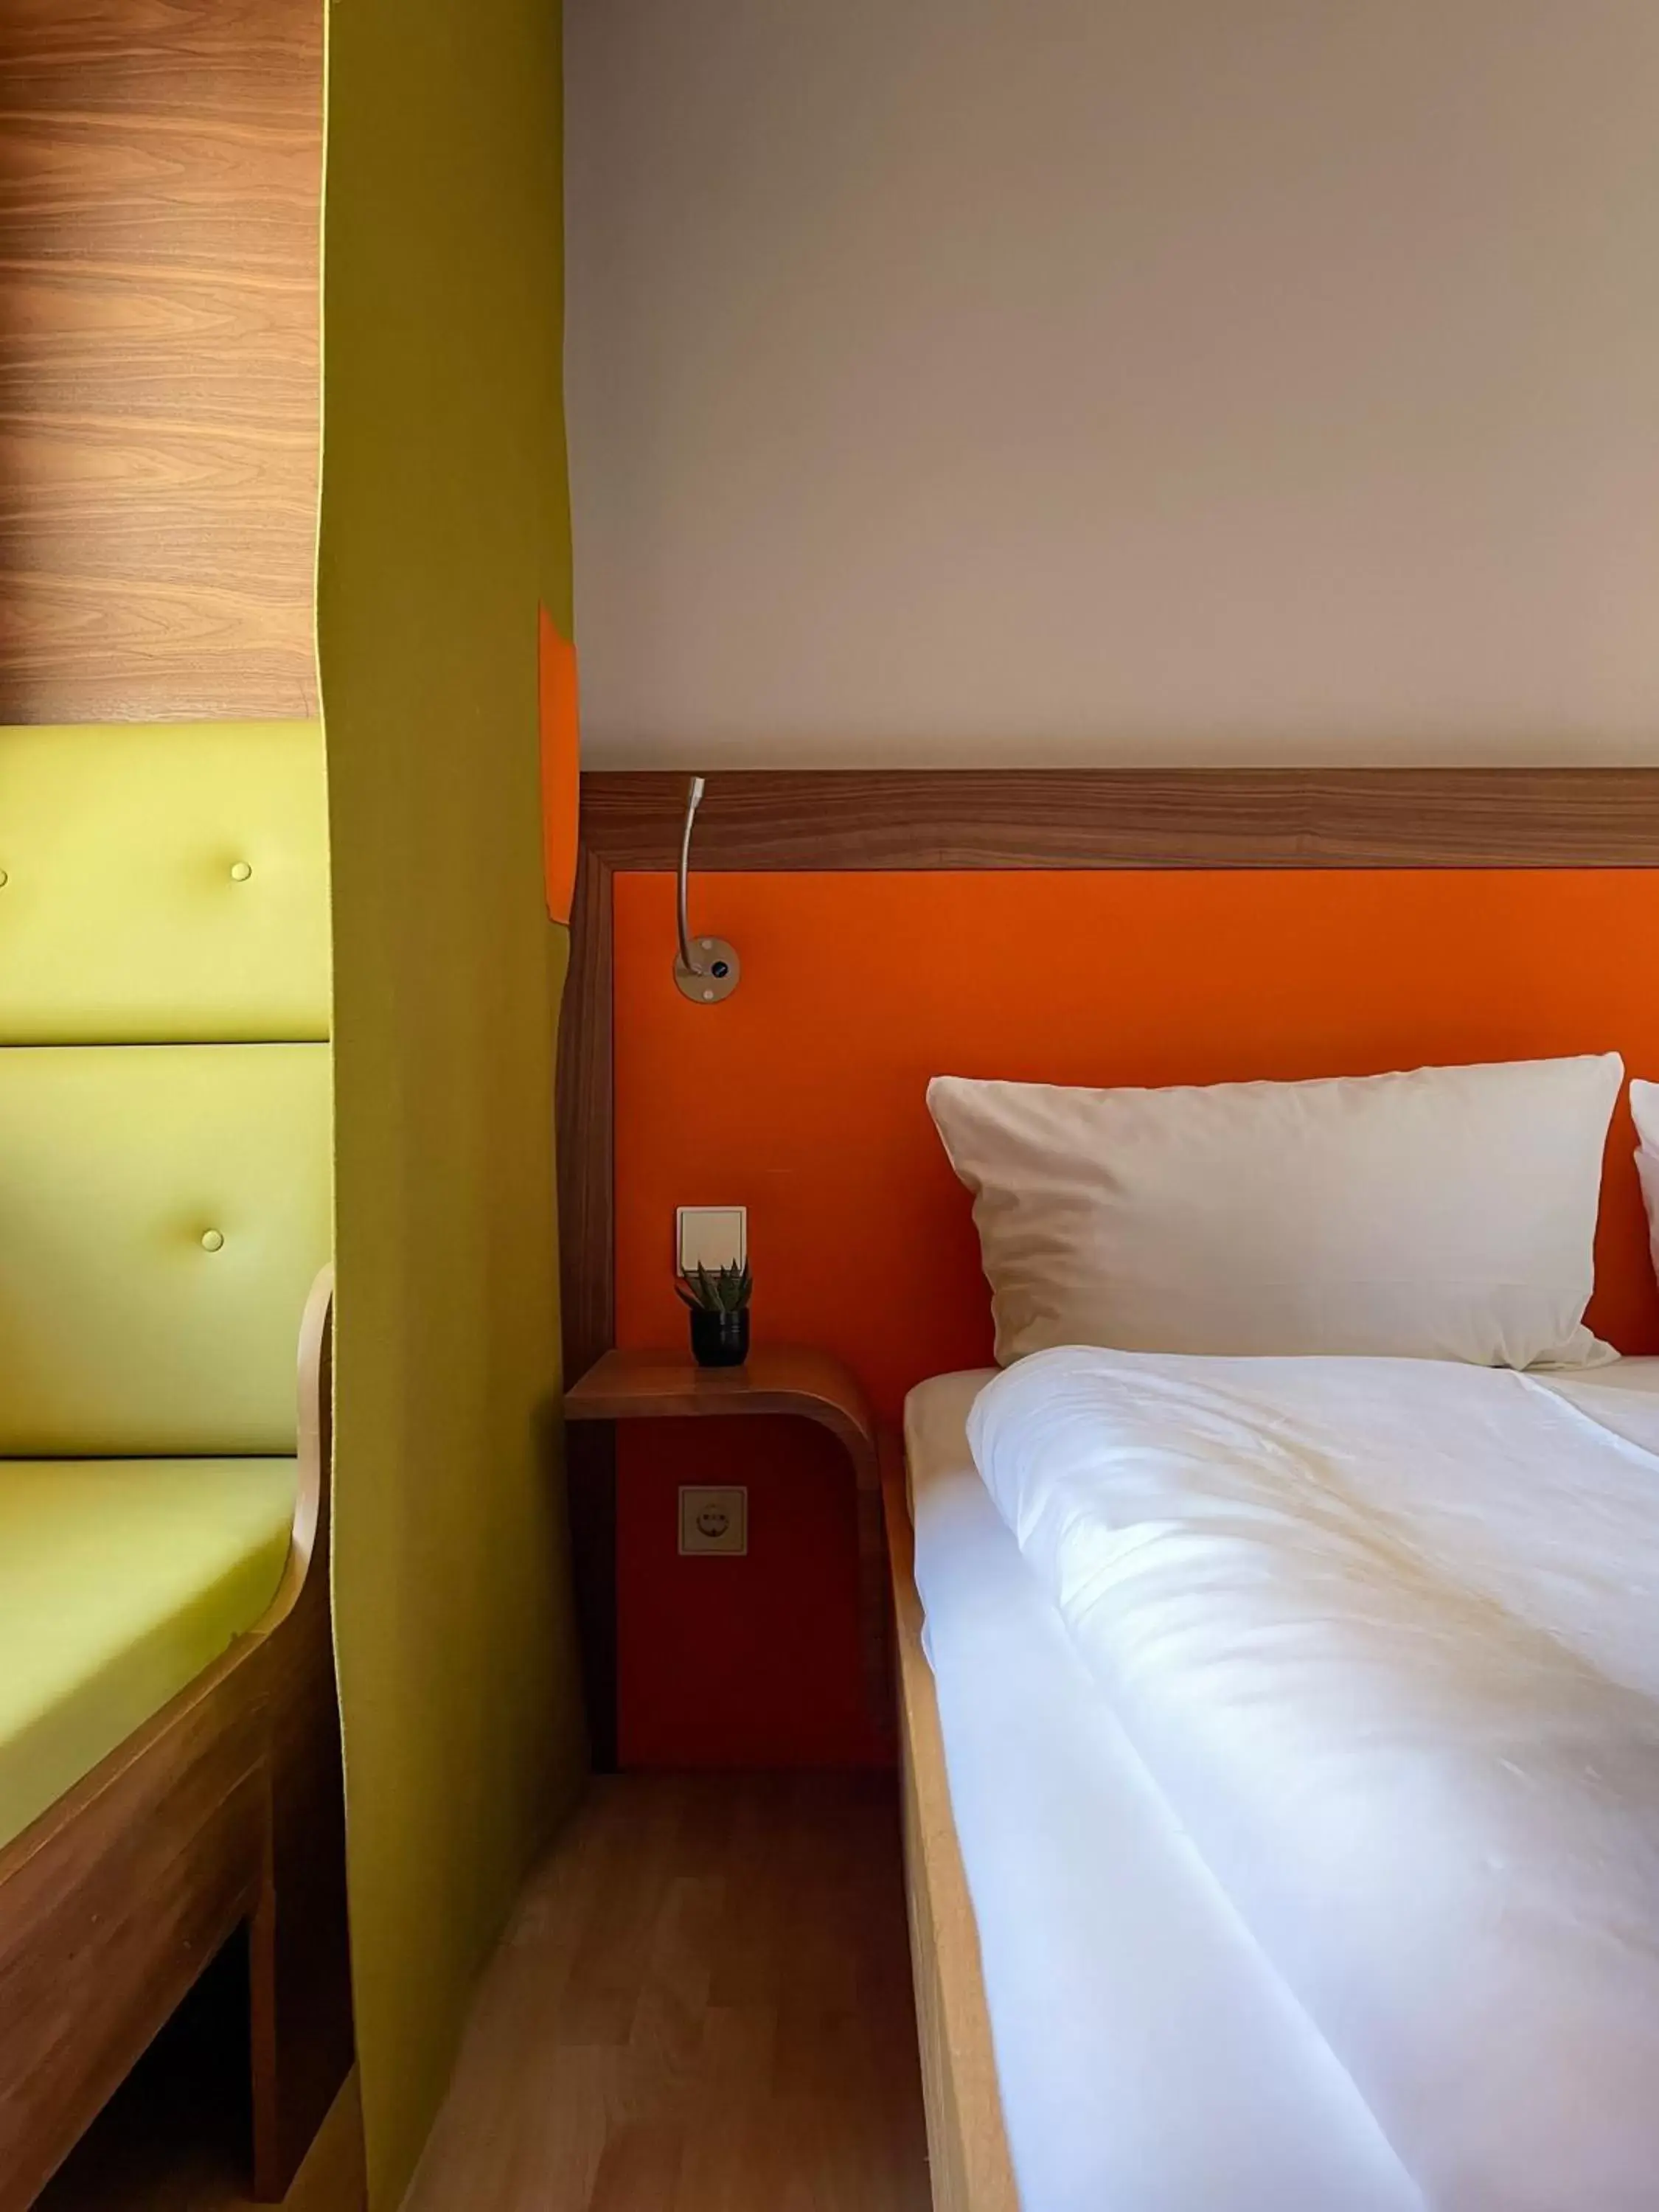 Bed in Hotel Sendlinger Tor